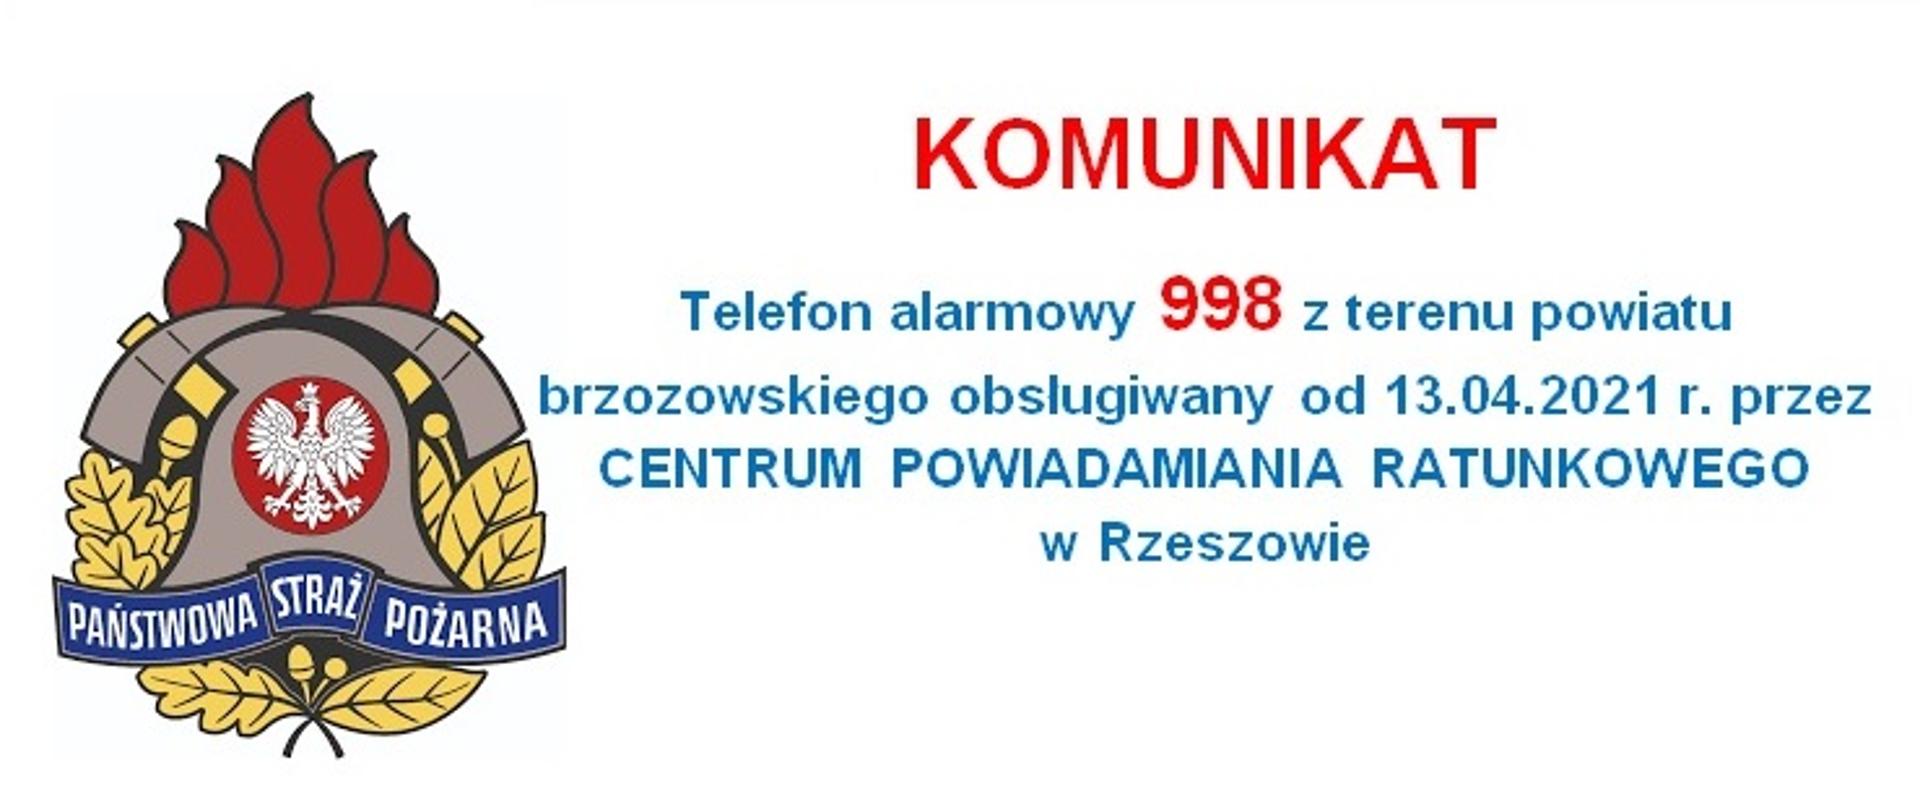 Kolorowe logo Państwowej Straży Pożarnej z czerwonym napisem Komunikat i niebieską treścią: Telefon alarmowy 998 z terenu powiatu brzozowskiego obsługiwany od 13 kwietnia 2021 r. przez CENTRUM POWIADAMIANIA RATUNKOWEGO w Rzeszowie